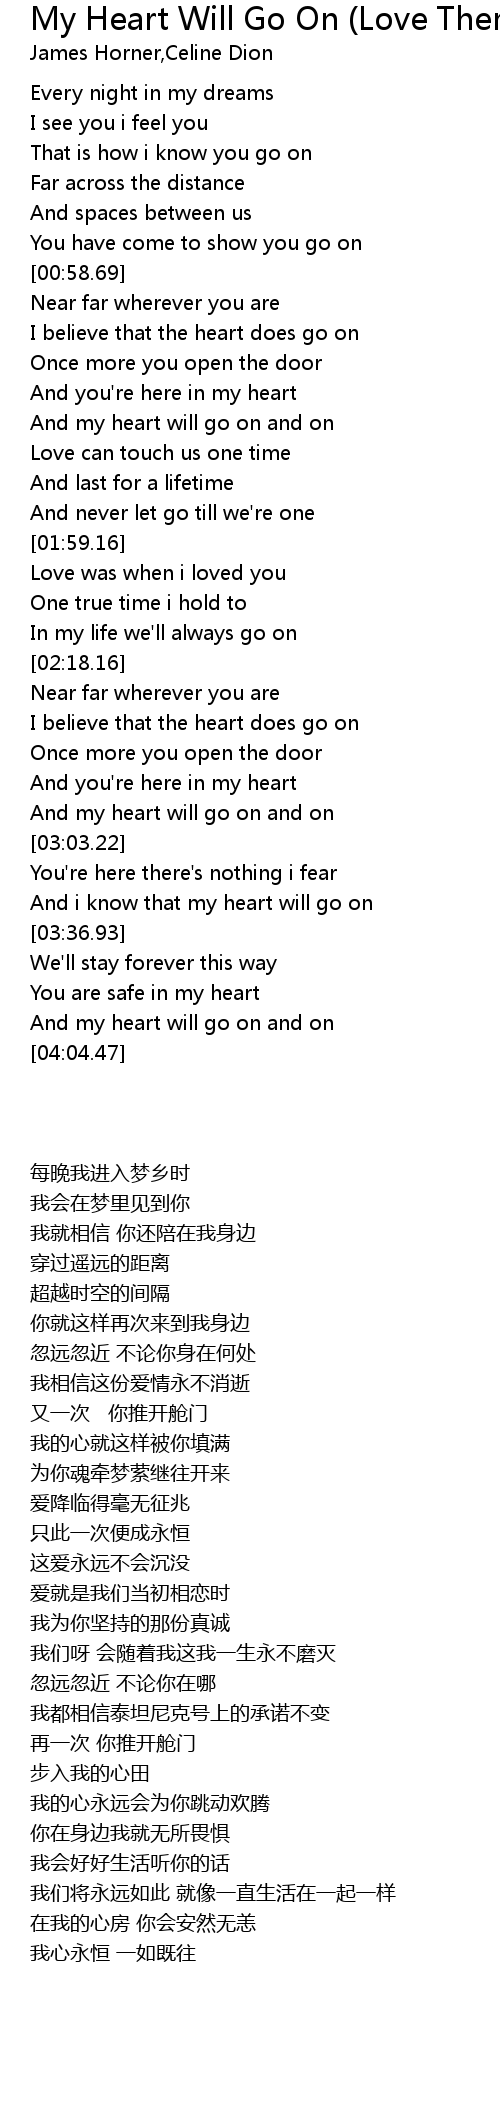 My heart will go on lyrics